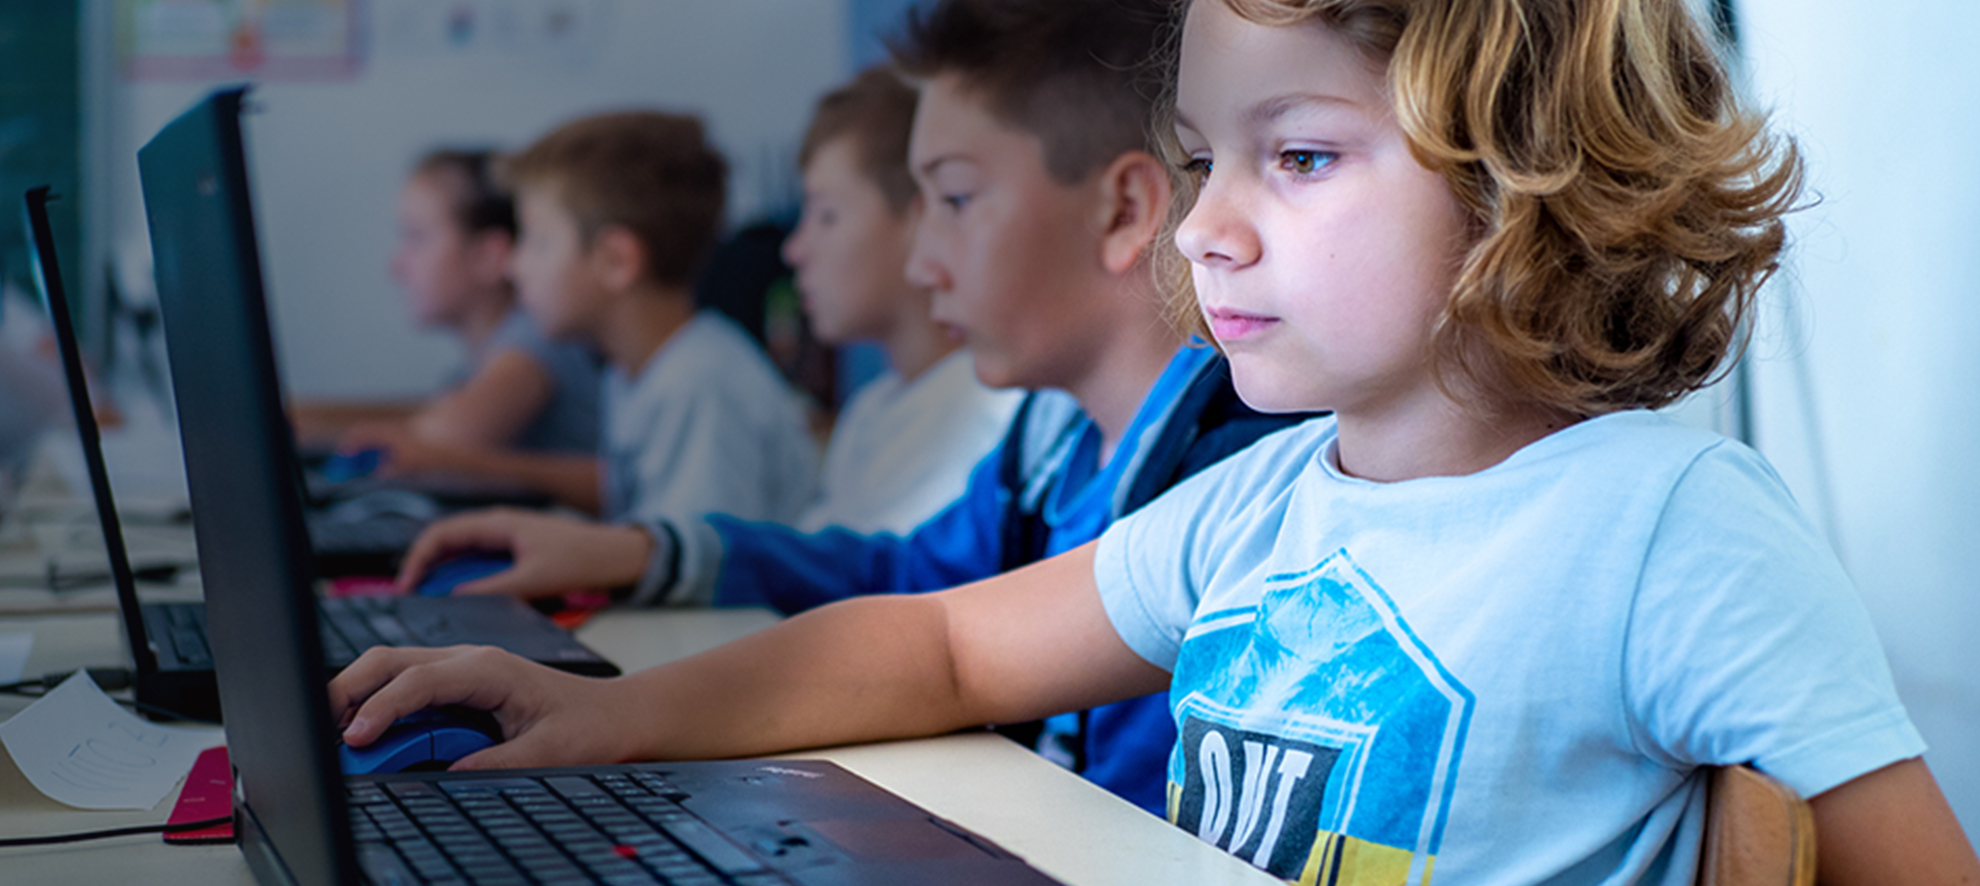 Image for Digitalna akademija poziva djecu osnovnoškolske dobi na besplatne radionice digitalnih vještina, uključujući kodiranje i robotiku